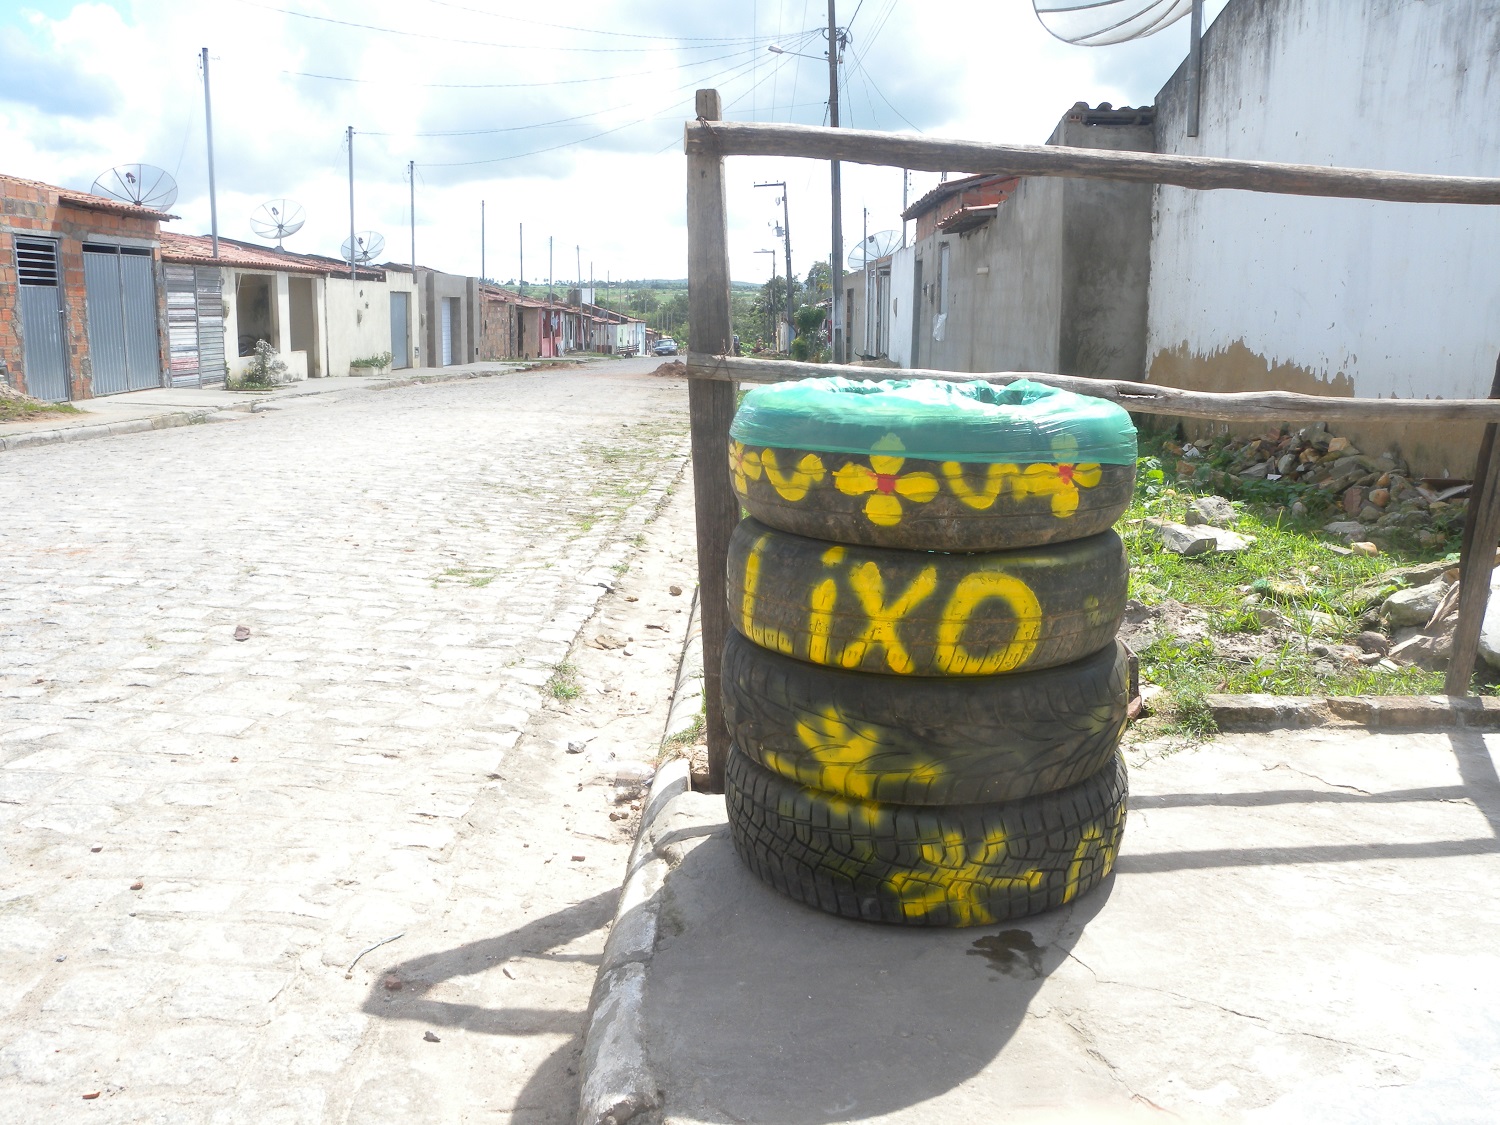 De acordo com a Associação Nacional de Indústria de Pneumáticos, em 2015, foram descartados 45,7 milhões de pneus.  A reutilização para servirem como lixeira contribui para evitar danos ambientais e à saúde (Foto: Ascom UFS Lagarto)